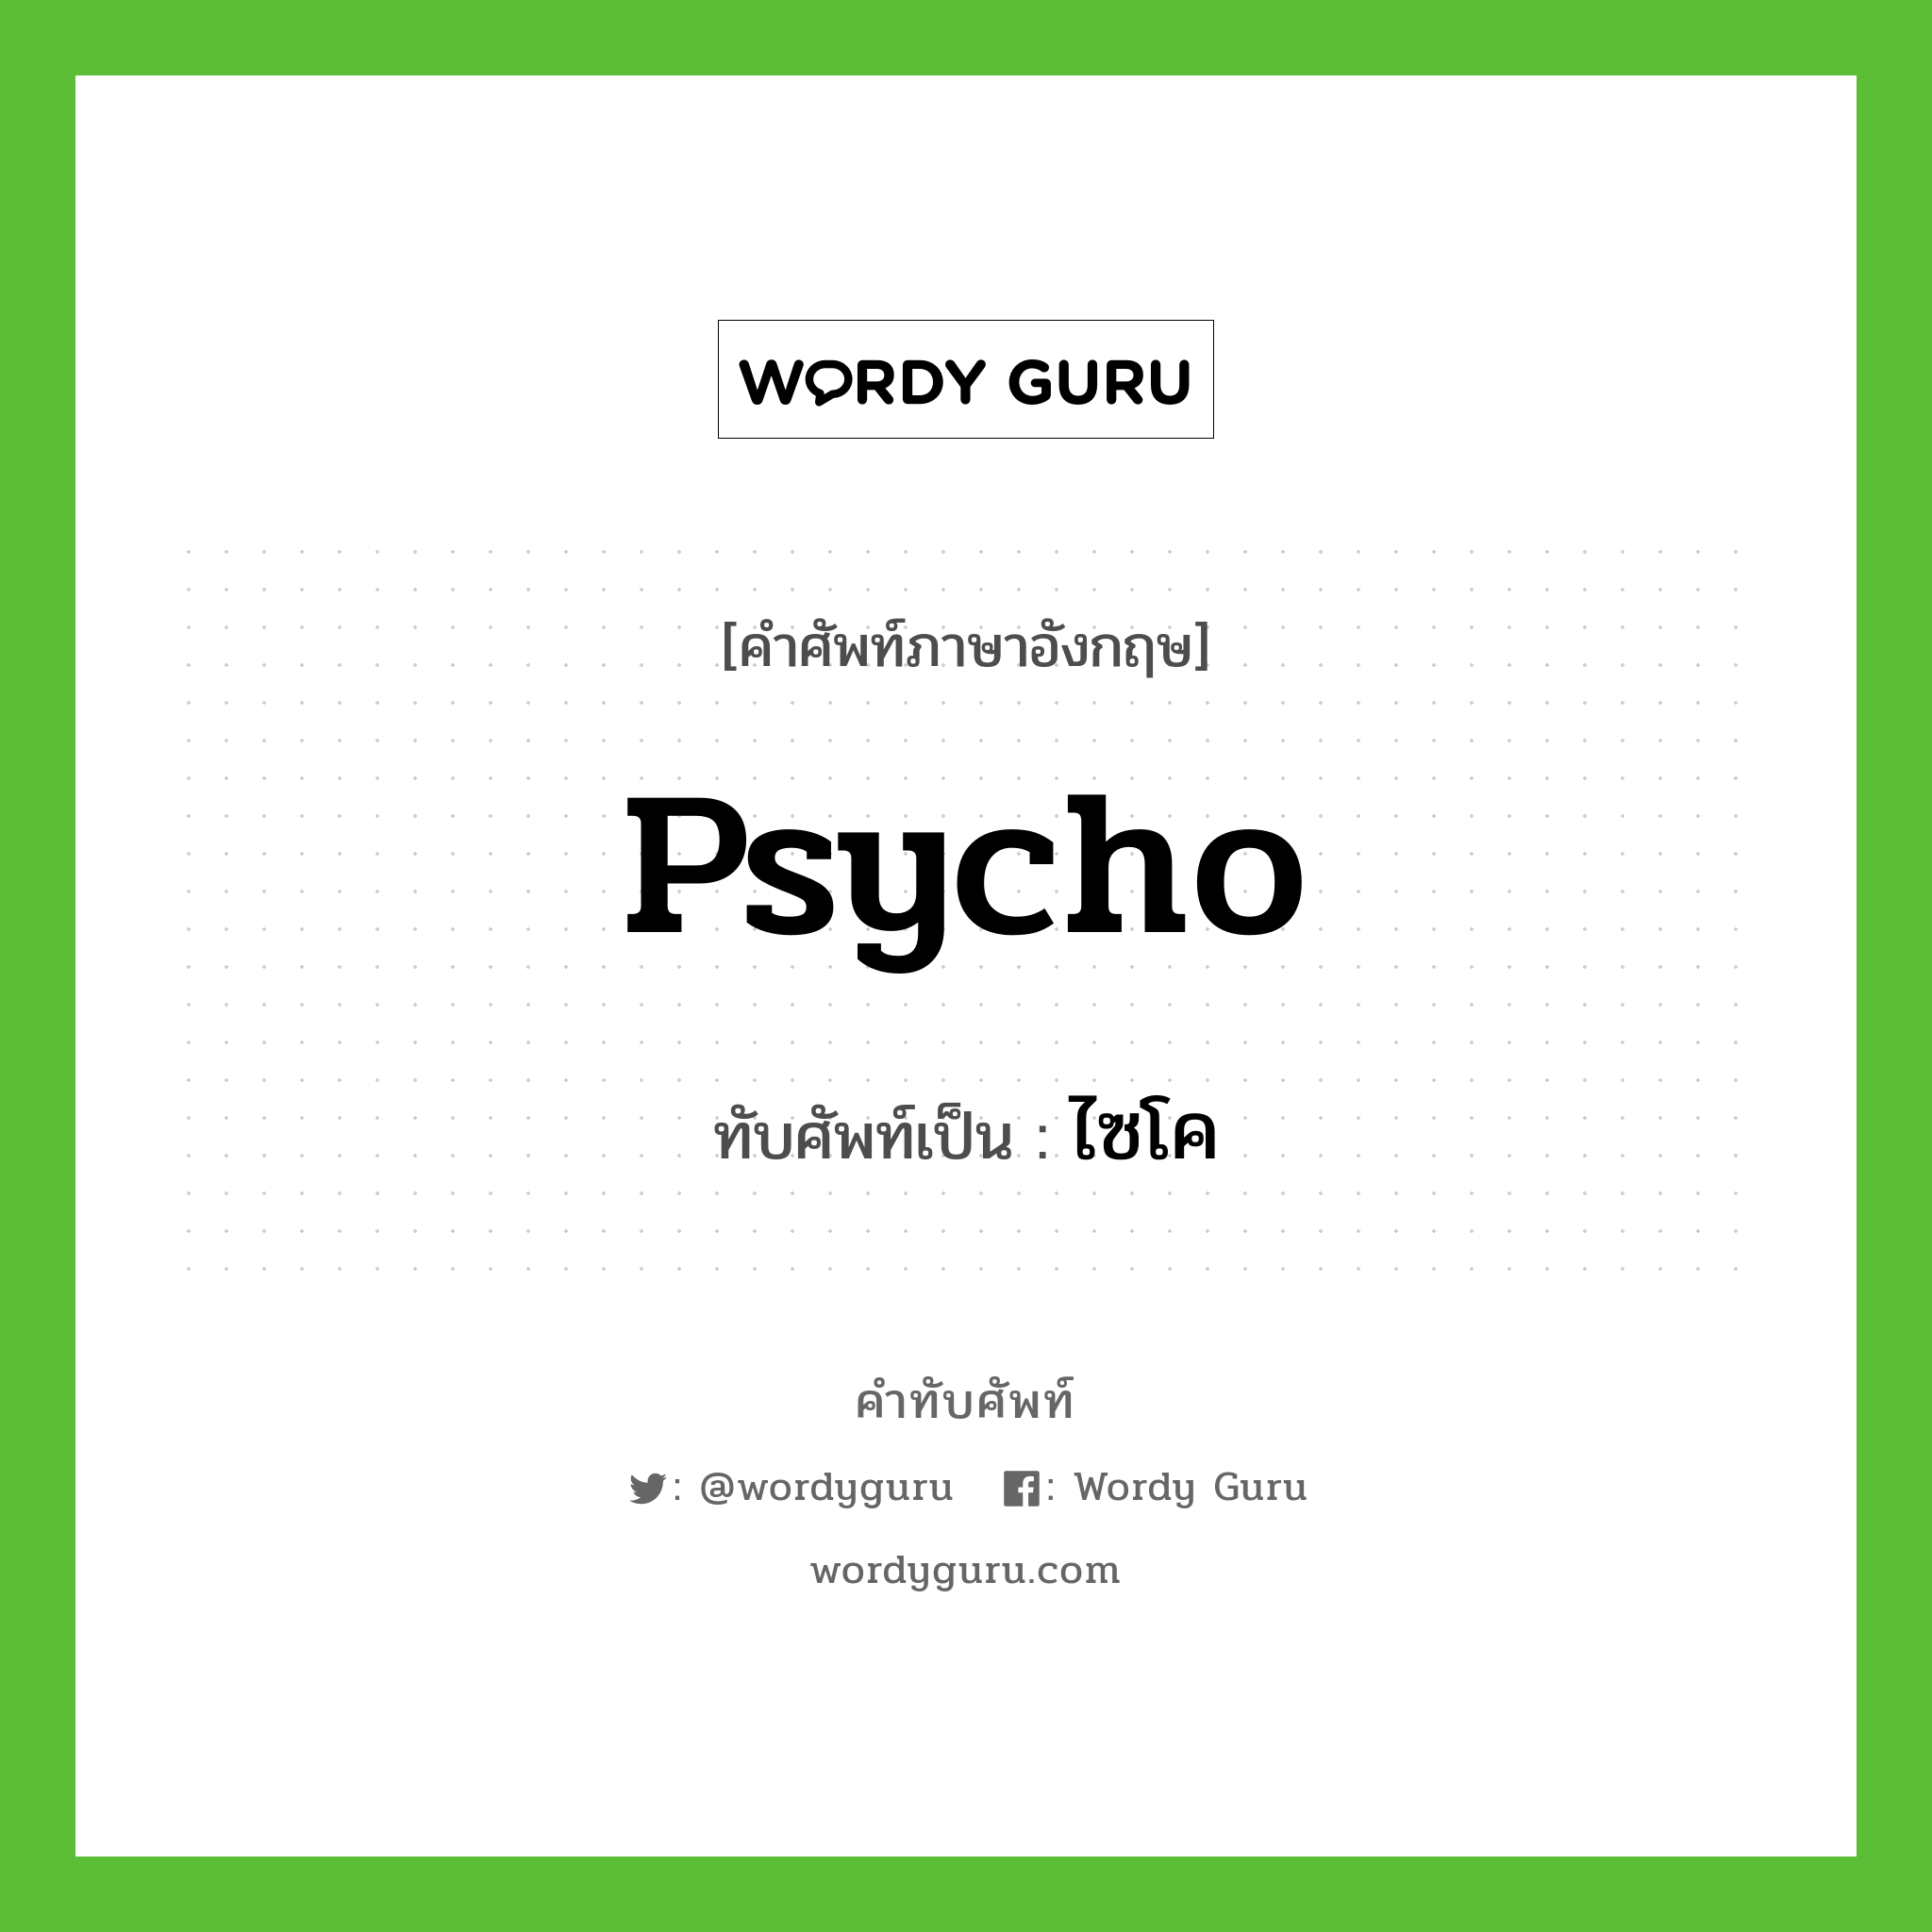 psycho เขียนเป็นคำไทยว่าอะไร?, คำศัพท์ภาษาอังกฤษ psycho ทับศัพท์เป็น ไซโค